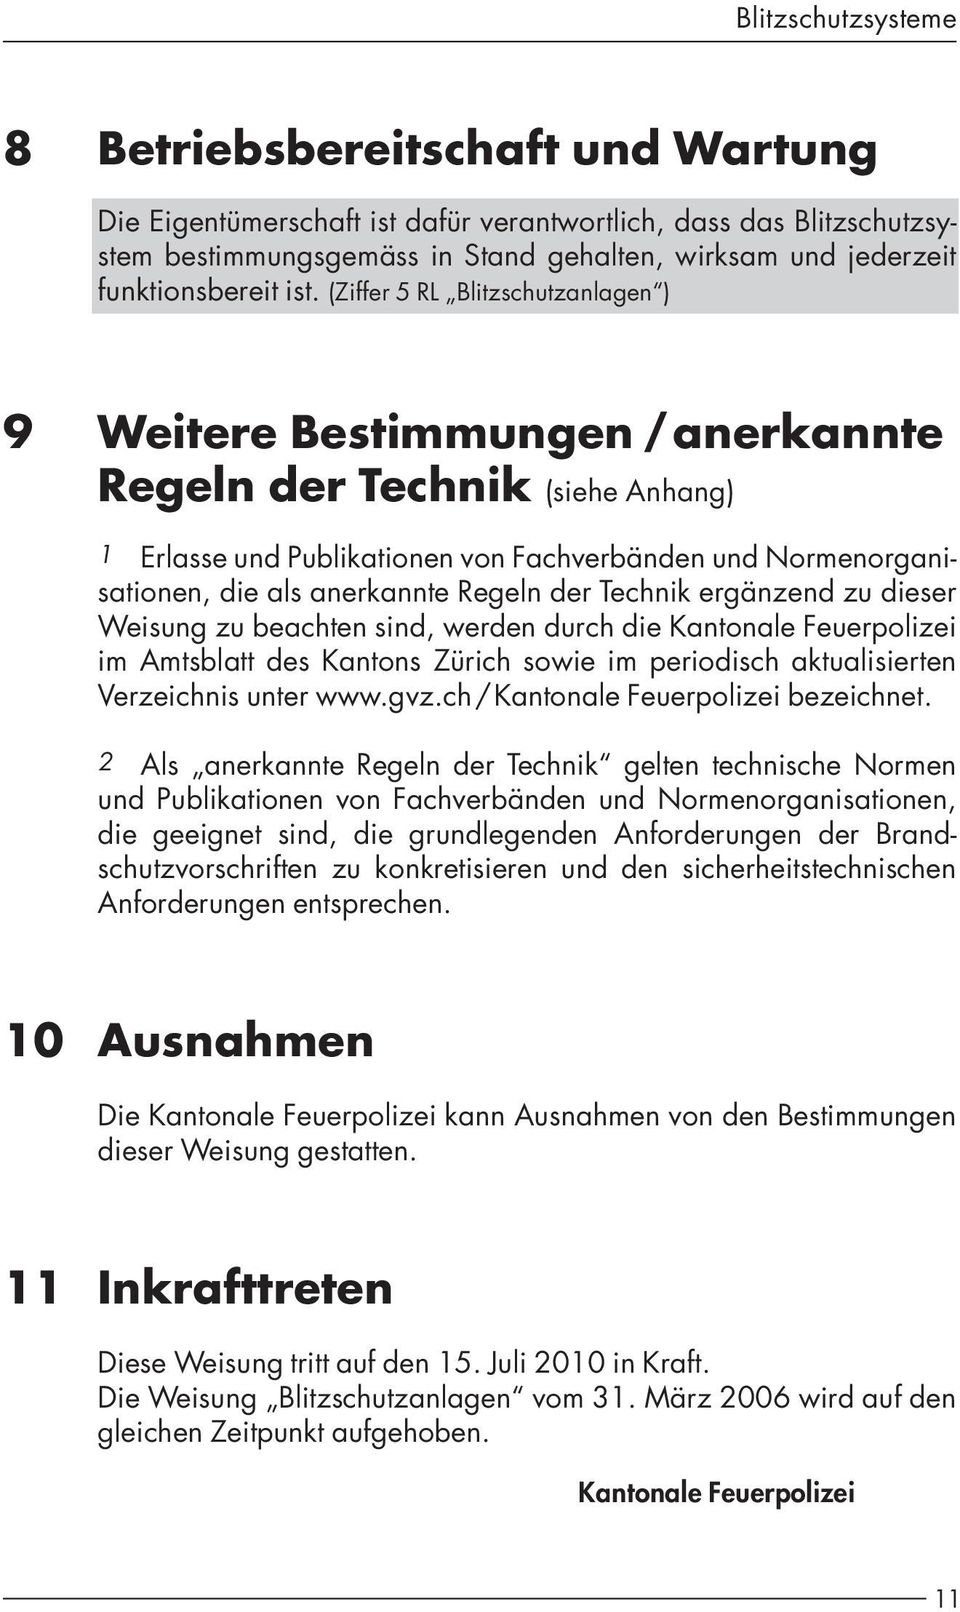 Regeln der Technik ergänzend zu dieser Weisung zu beachten sind, werden durch die Kantonale Feuerpolizei im Amtsblatt des Kantons Zürich sowie im periodisch aktualisierten Verzeichnis unter www.gvz.